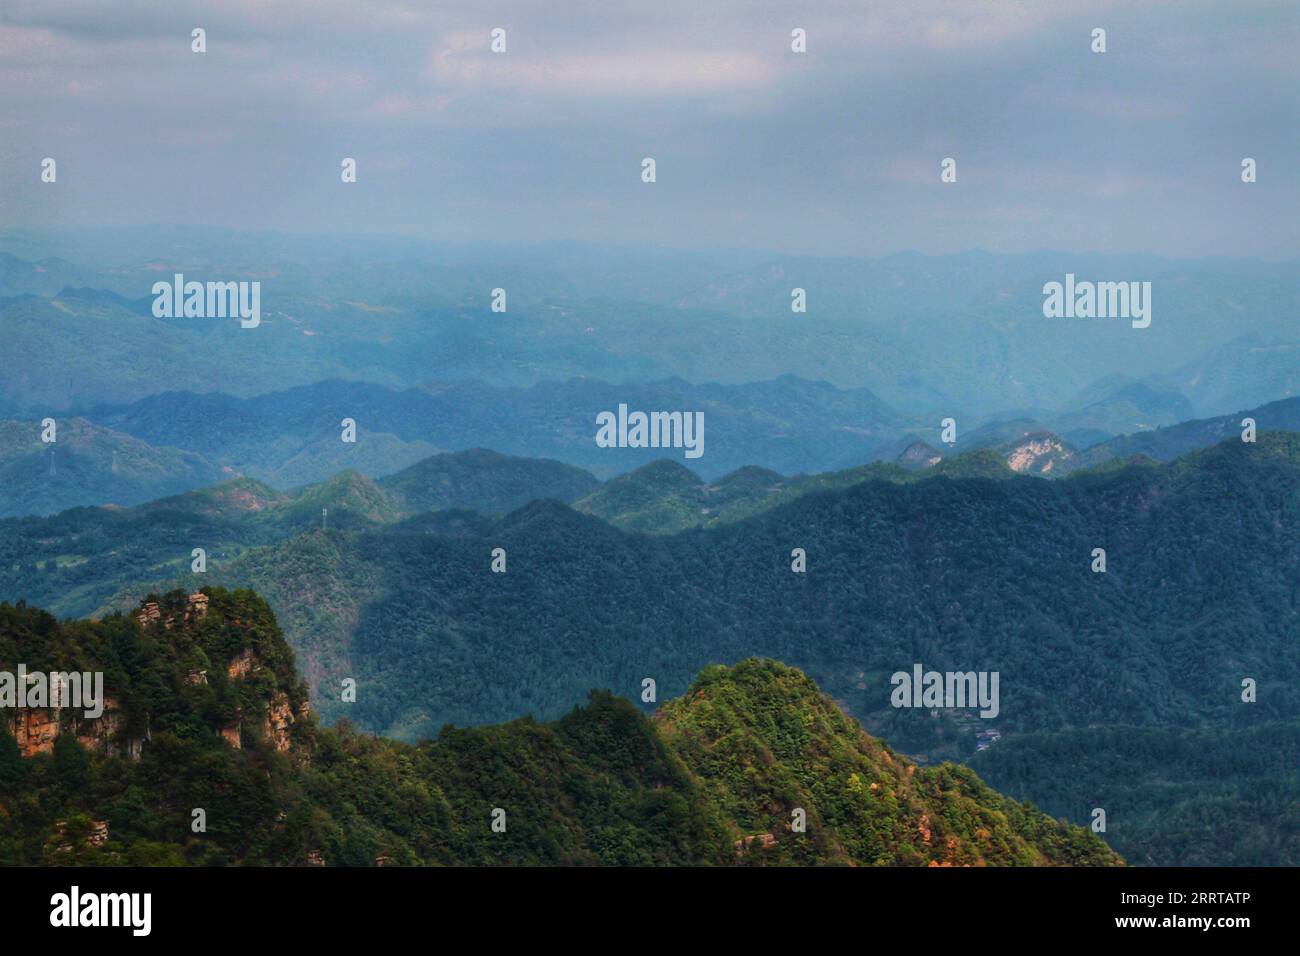 Capturez l'essence époustouflante des montagnes imposantes et pointues emblématiques de la Chine, qui rappellent les paysages impressionnants du film Avatar. Banque D'Images